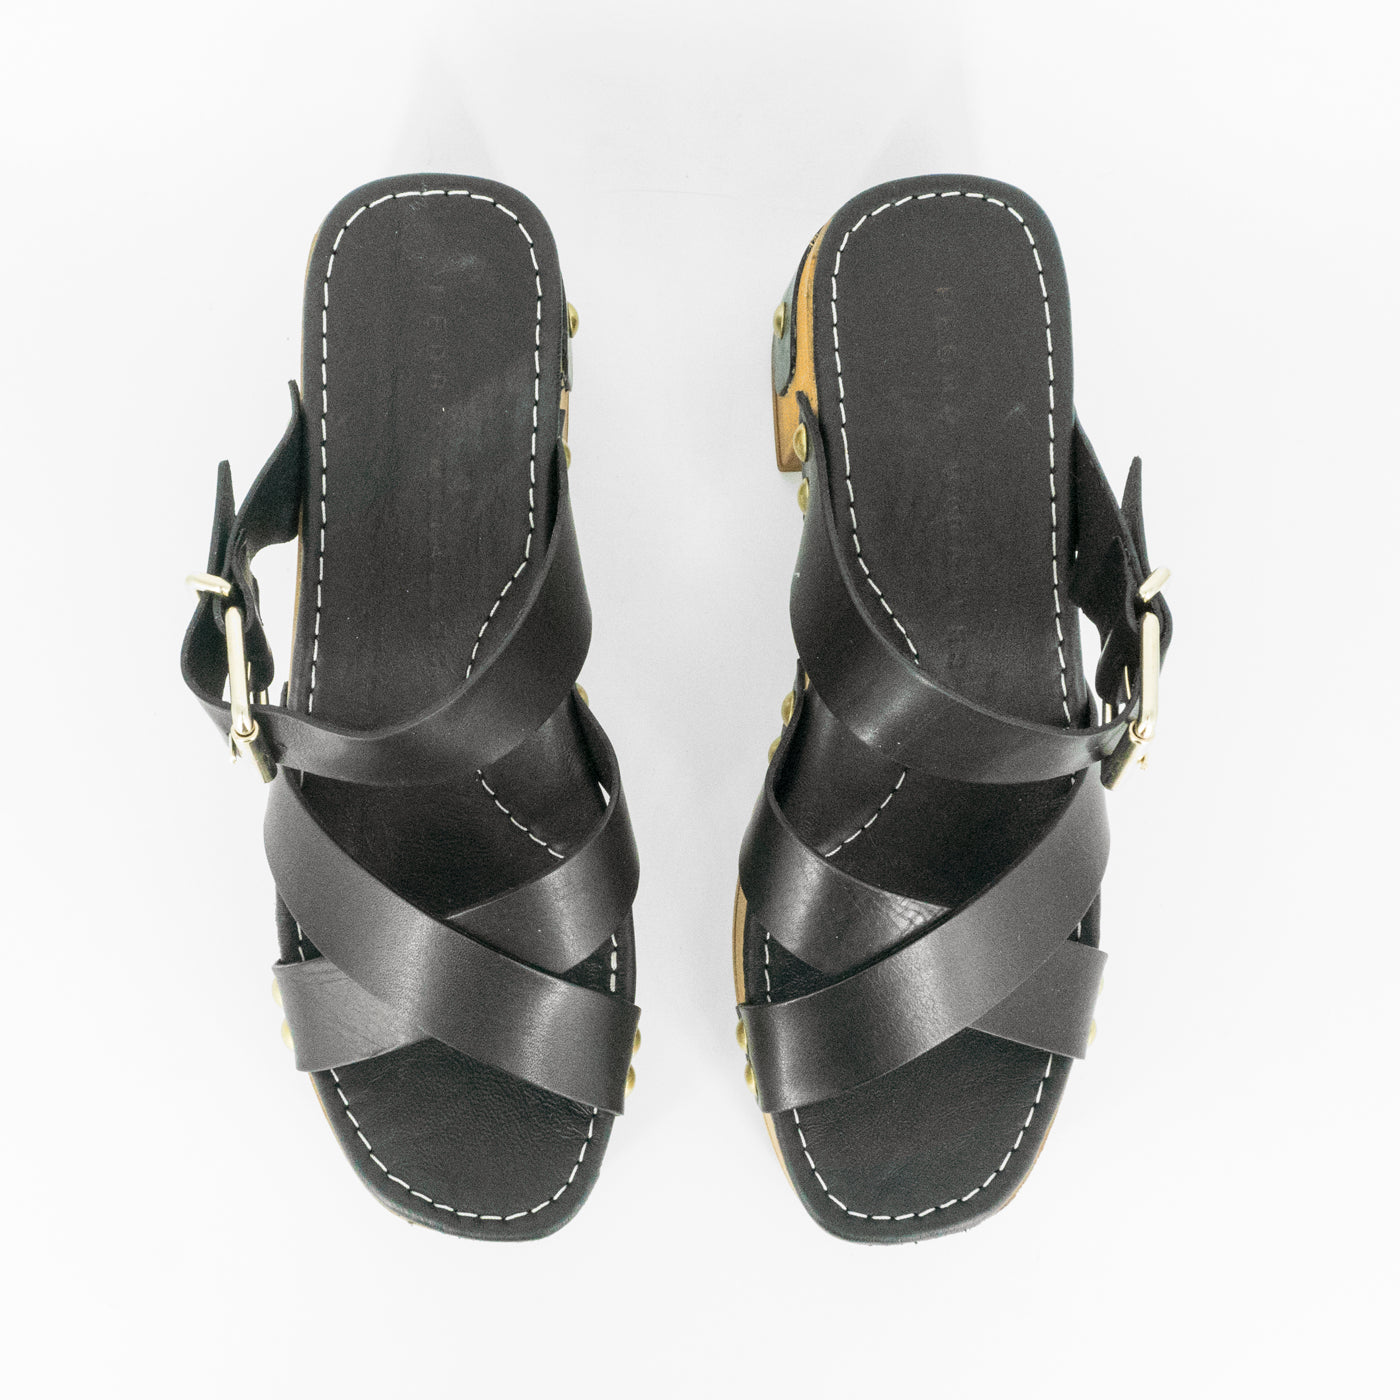 Sandalias De La Marca Pedro Miralles Para Mujer Modelo 13151 Alfa En Color Negro